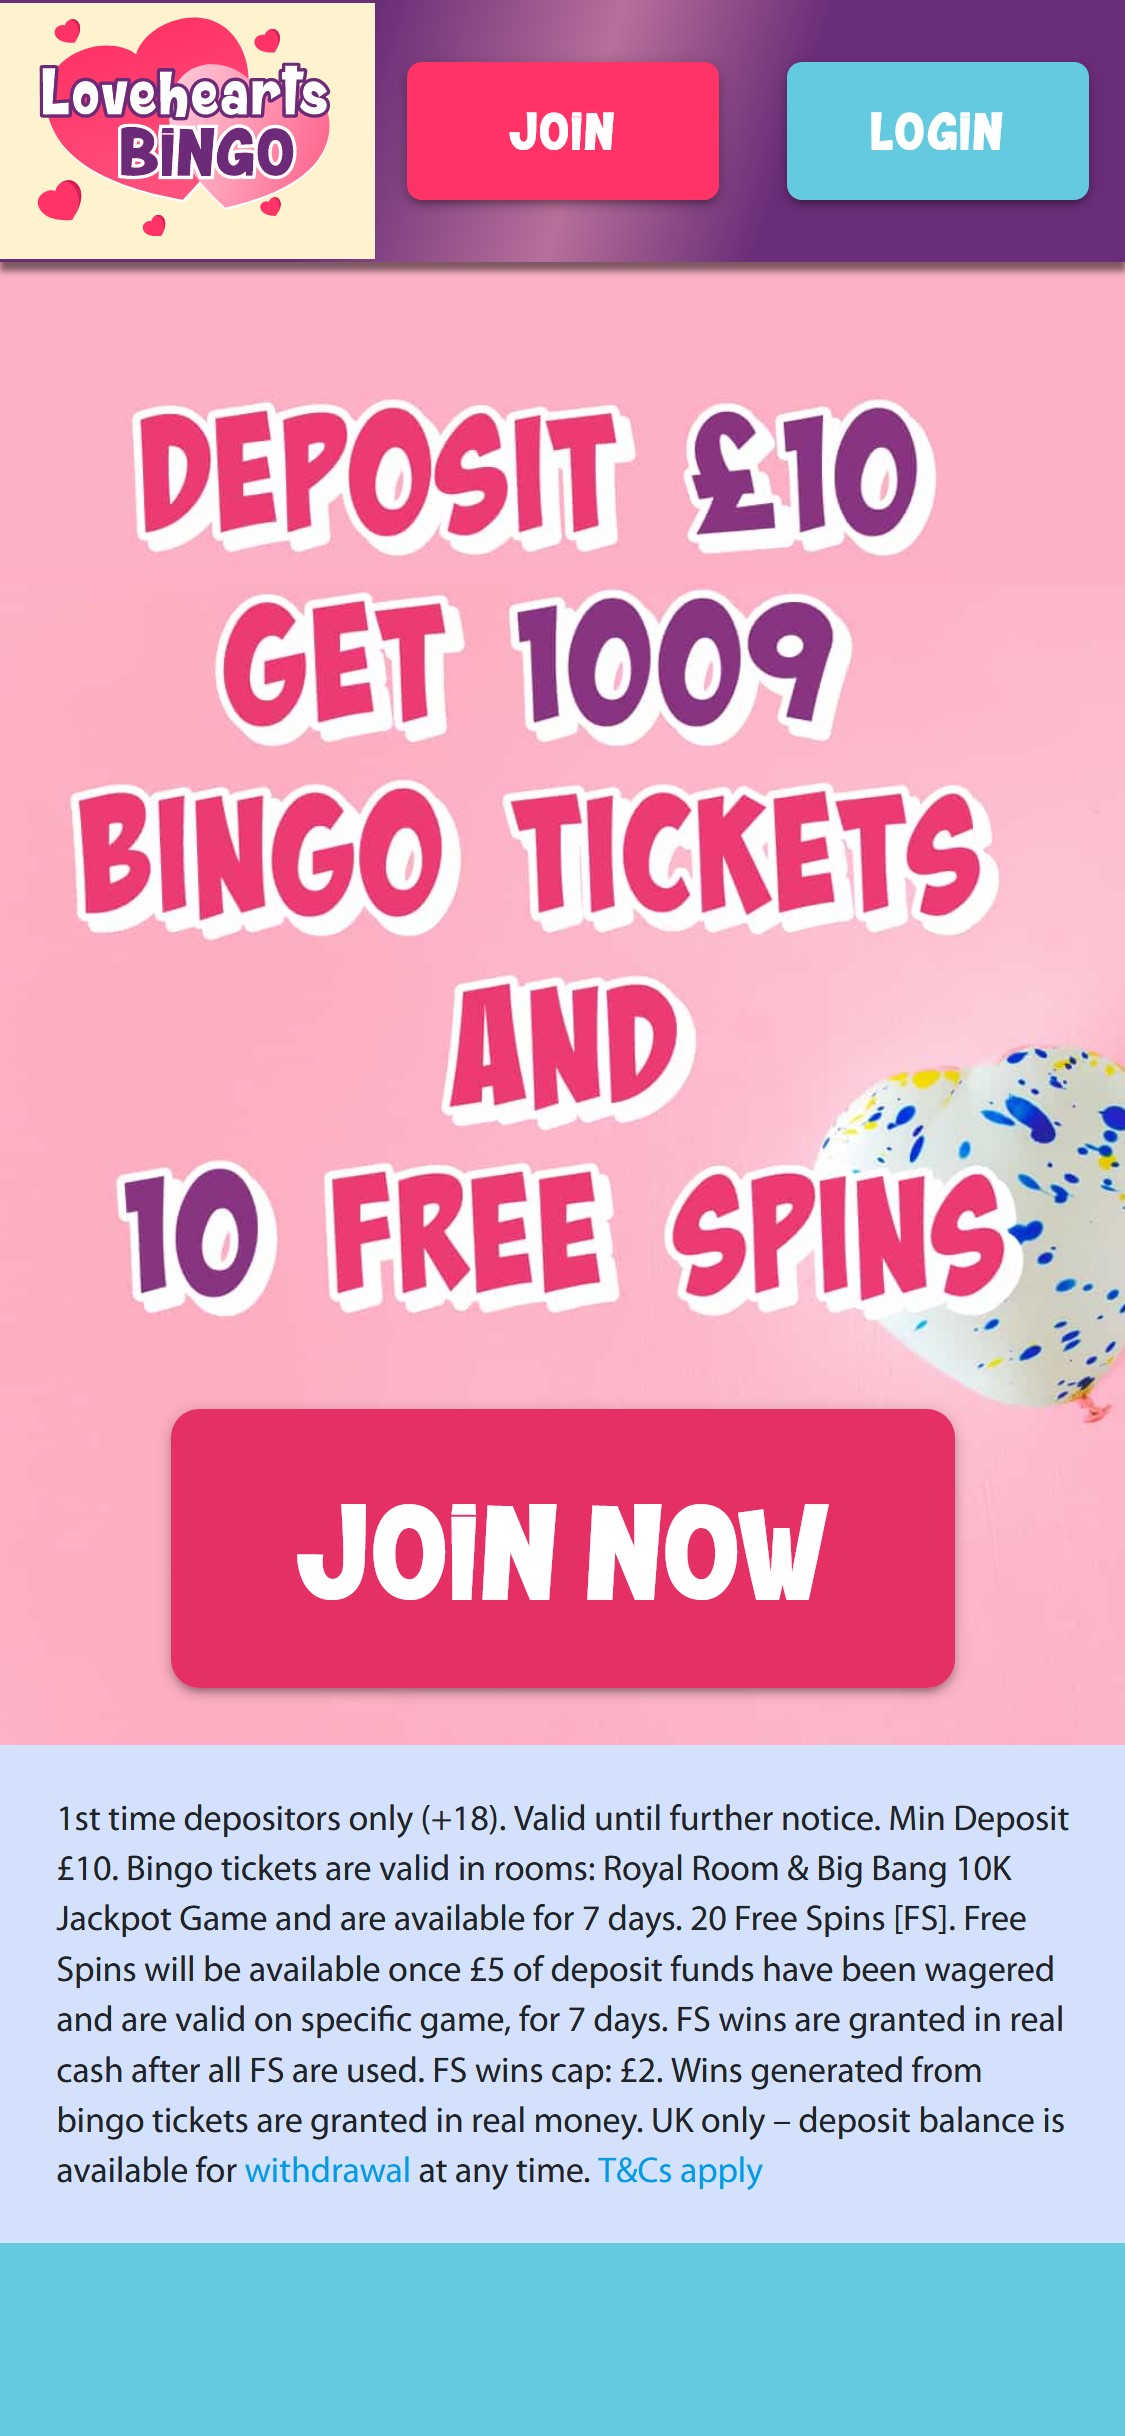 Love Hearts Bingo Casino Mobile Review